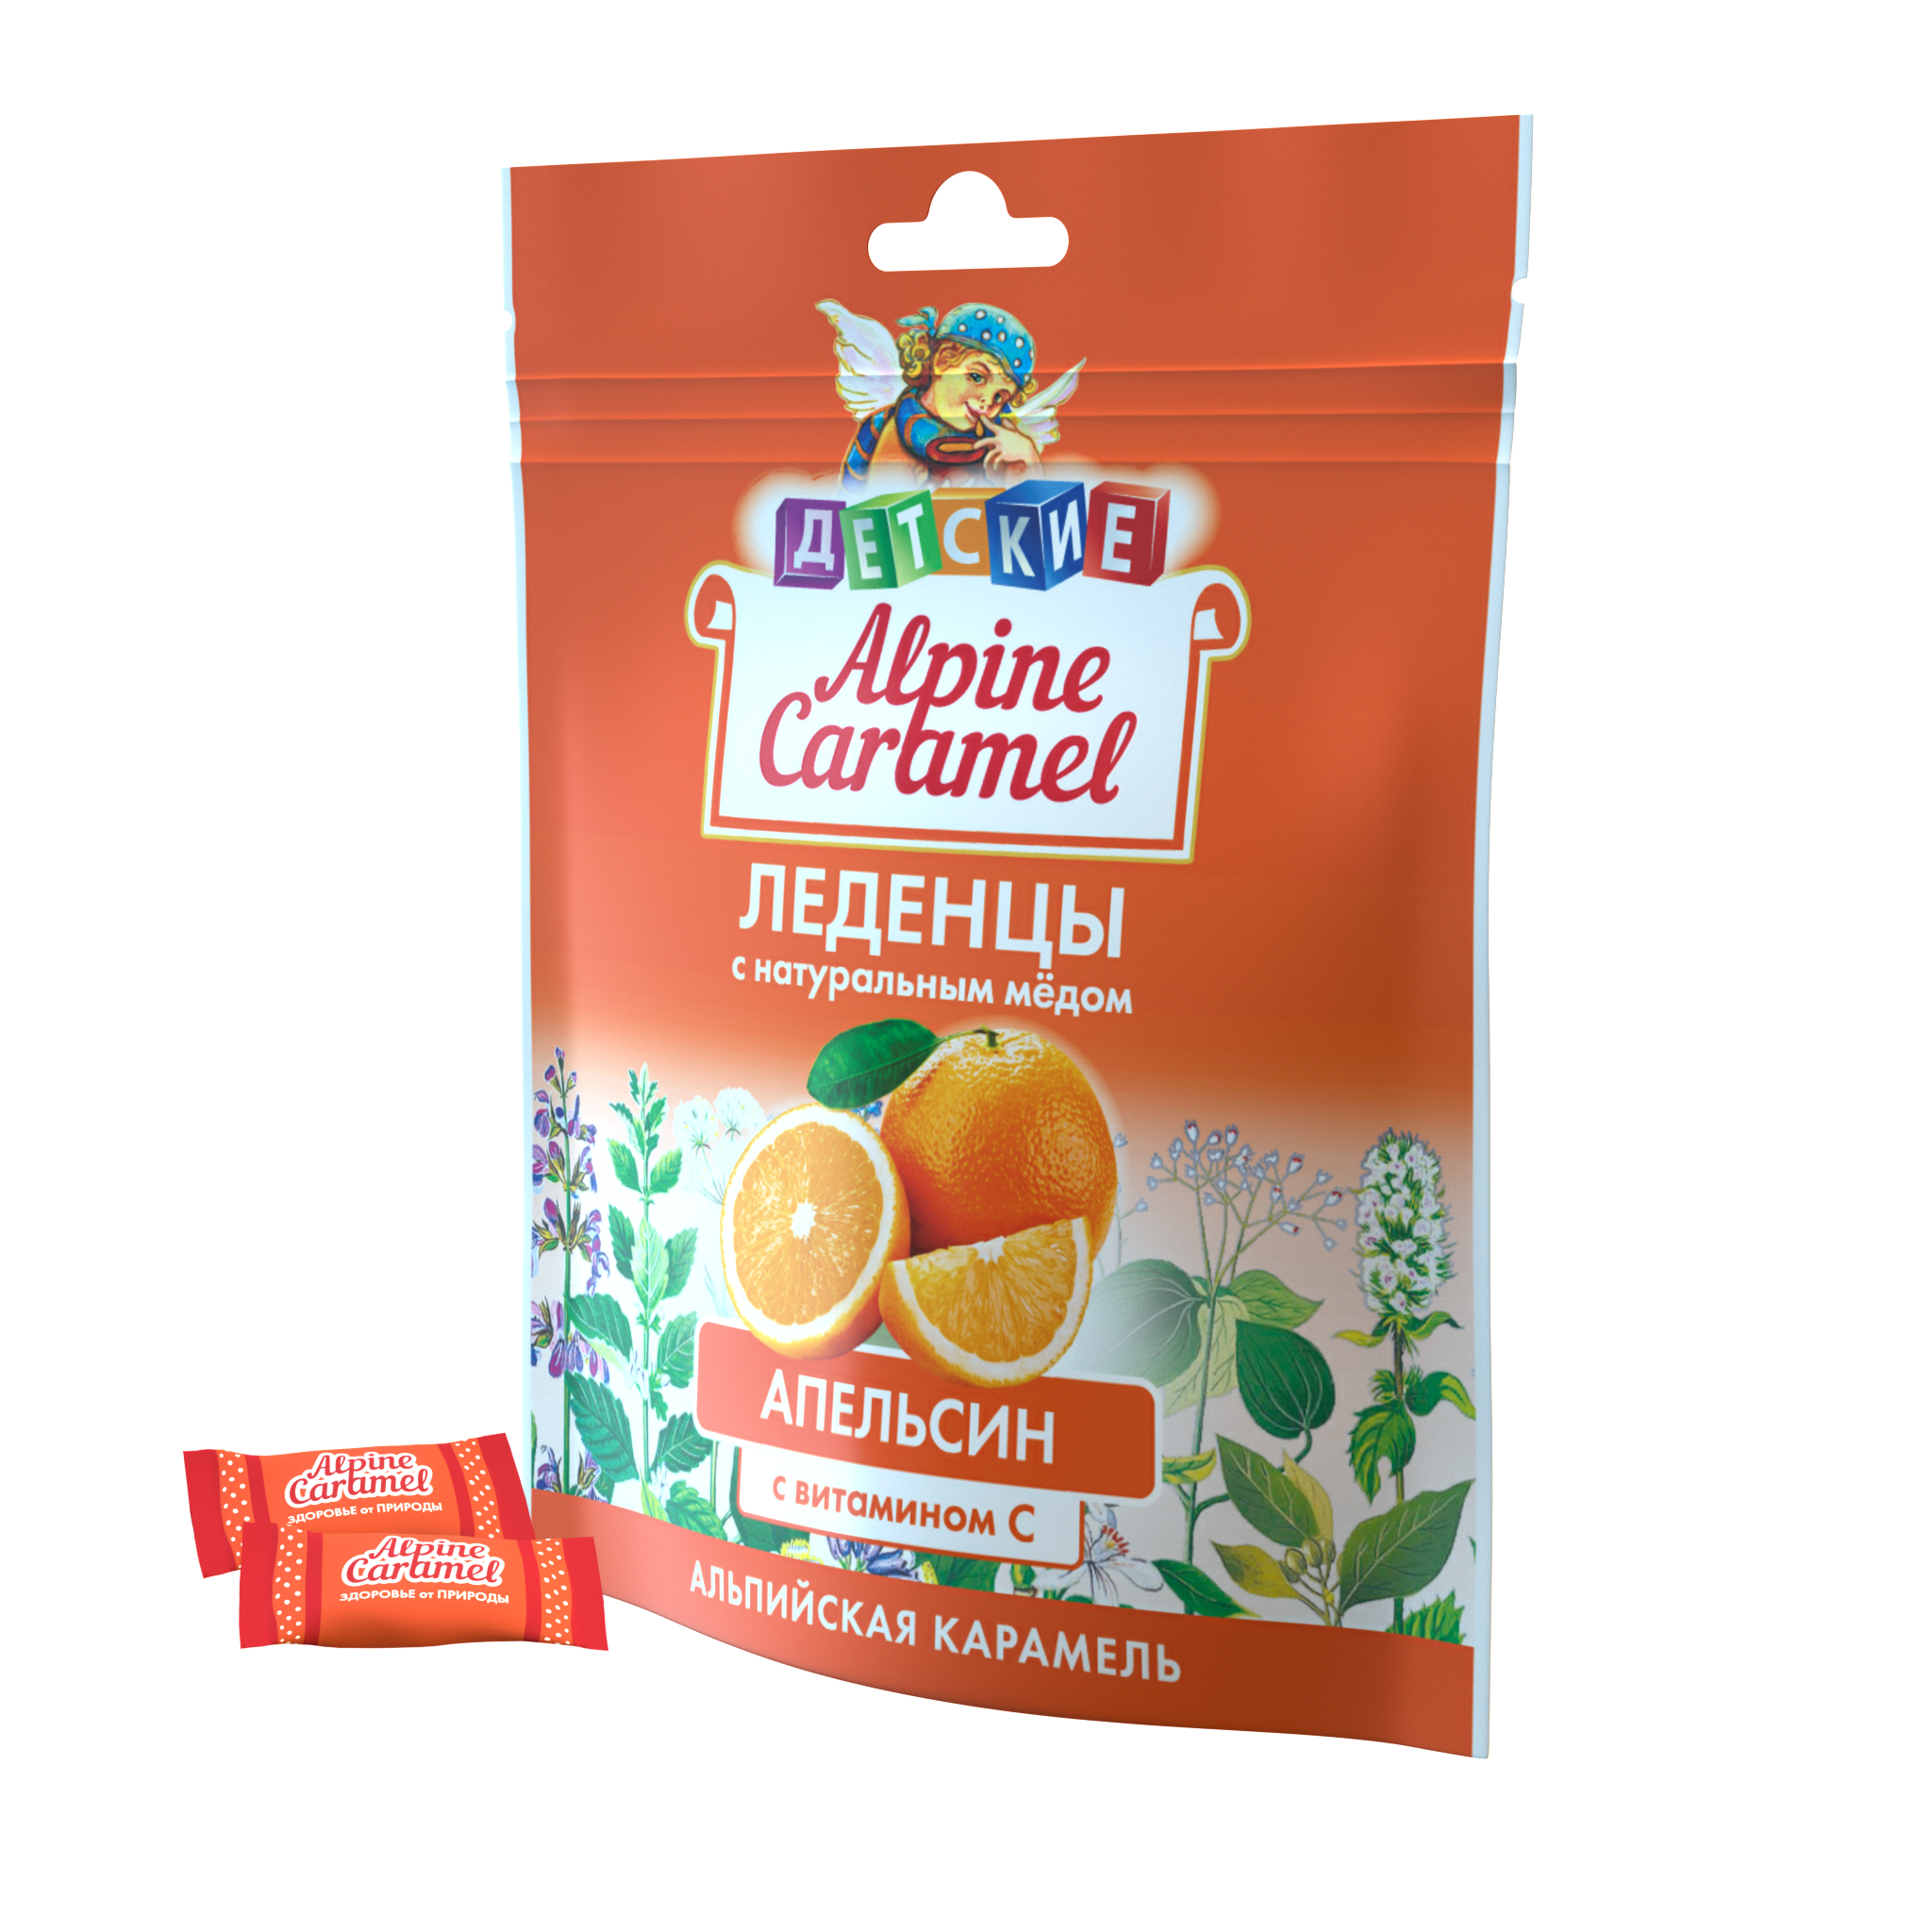 Alpine Caramel Альпийская Карамель леденцы дет (апельсин с медом и витамином С), 75 г ответственный ребёнок